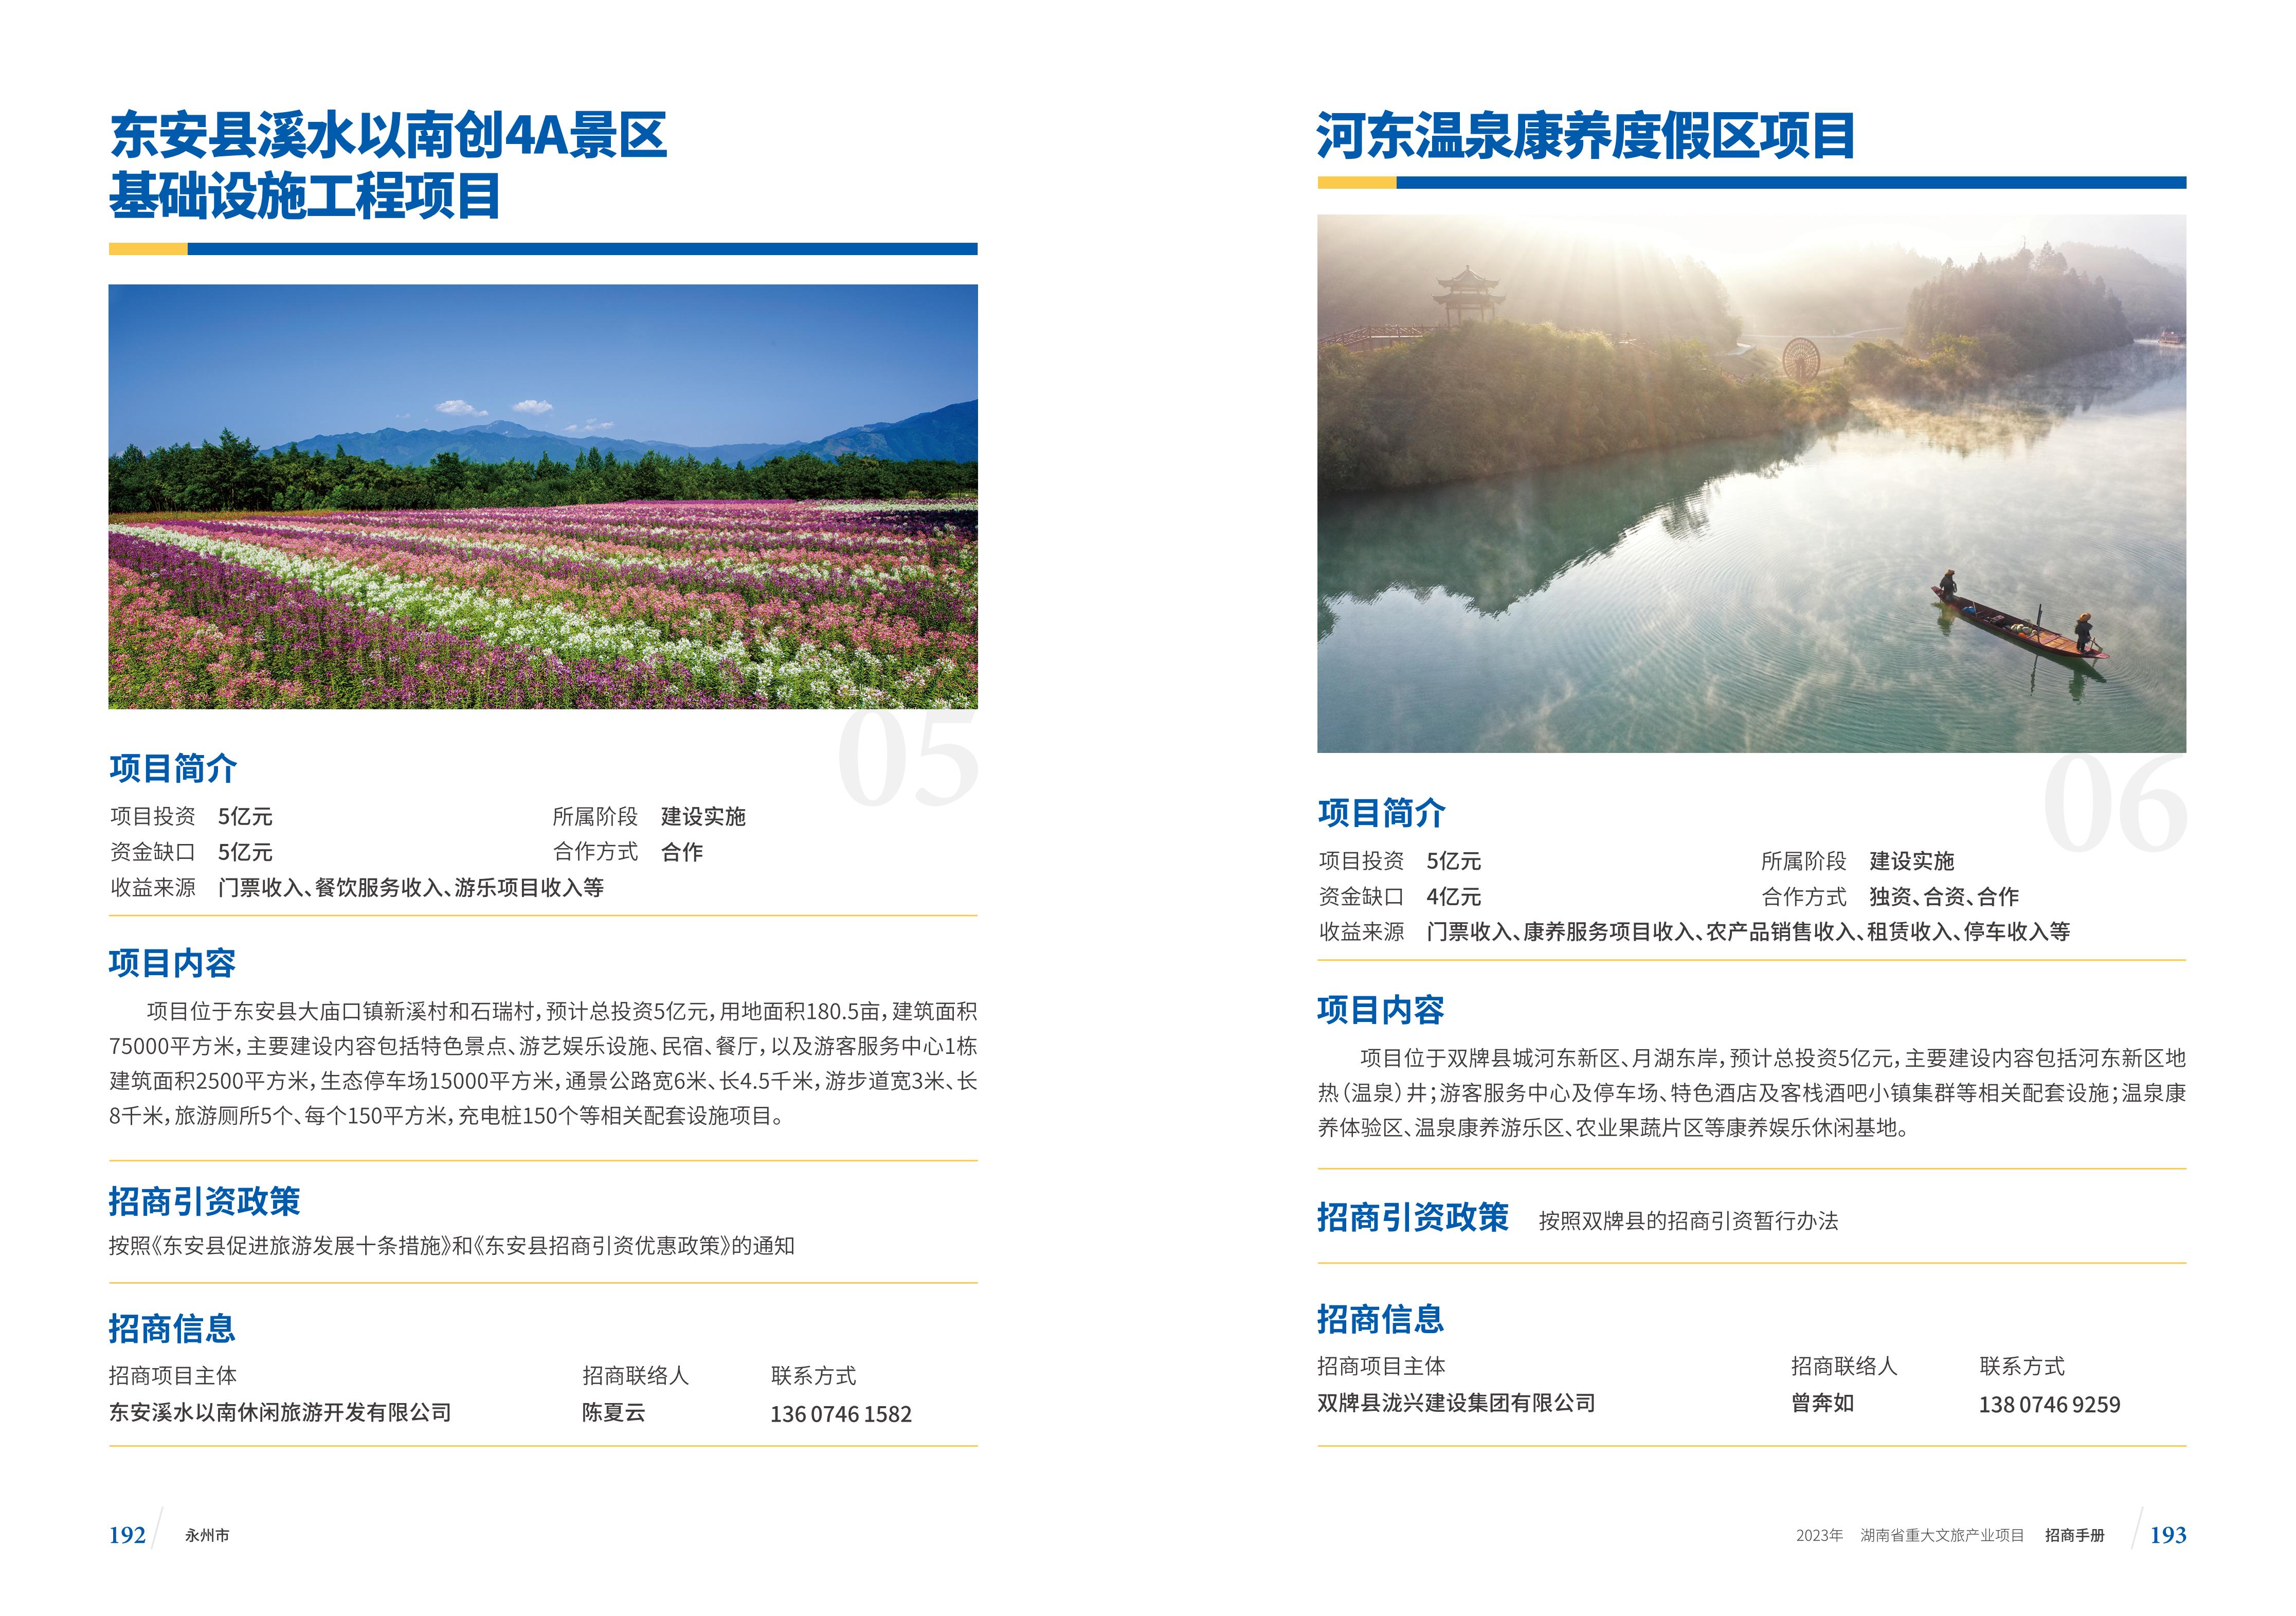 湖南省重大文旅产业项目招手册线上链接版_104.jpg